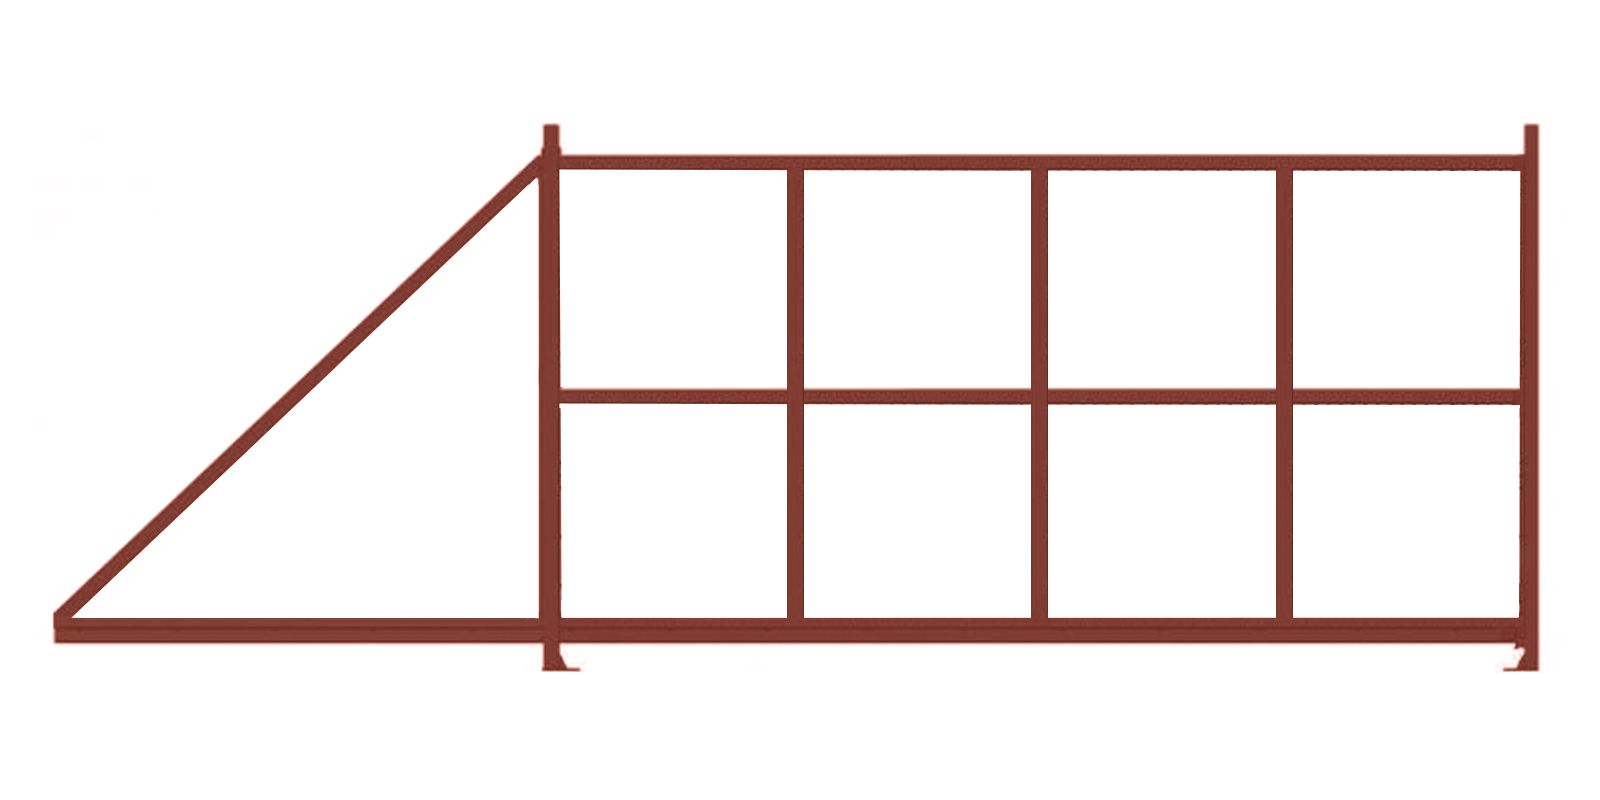 Купить Откатные ворота стандартные шириной 3,50 м в комплектации Базовая + фурнитура + автоматика